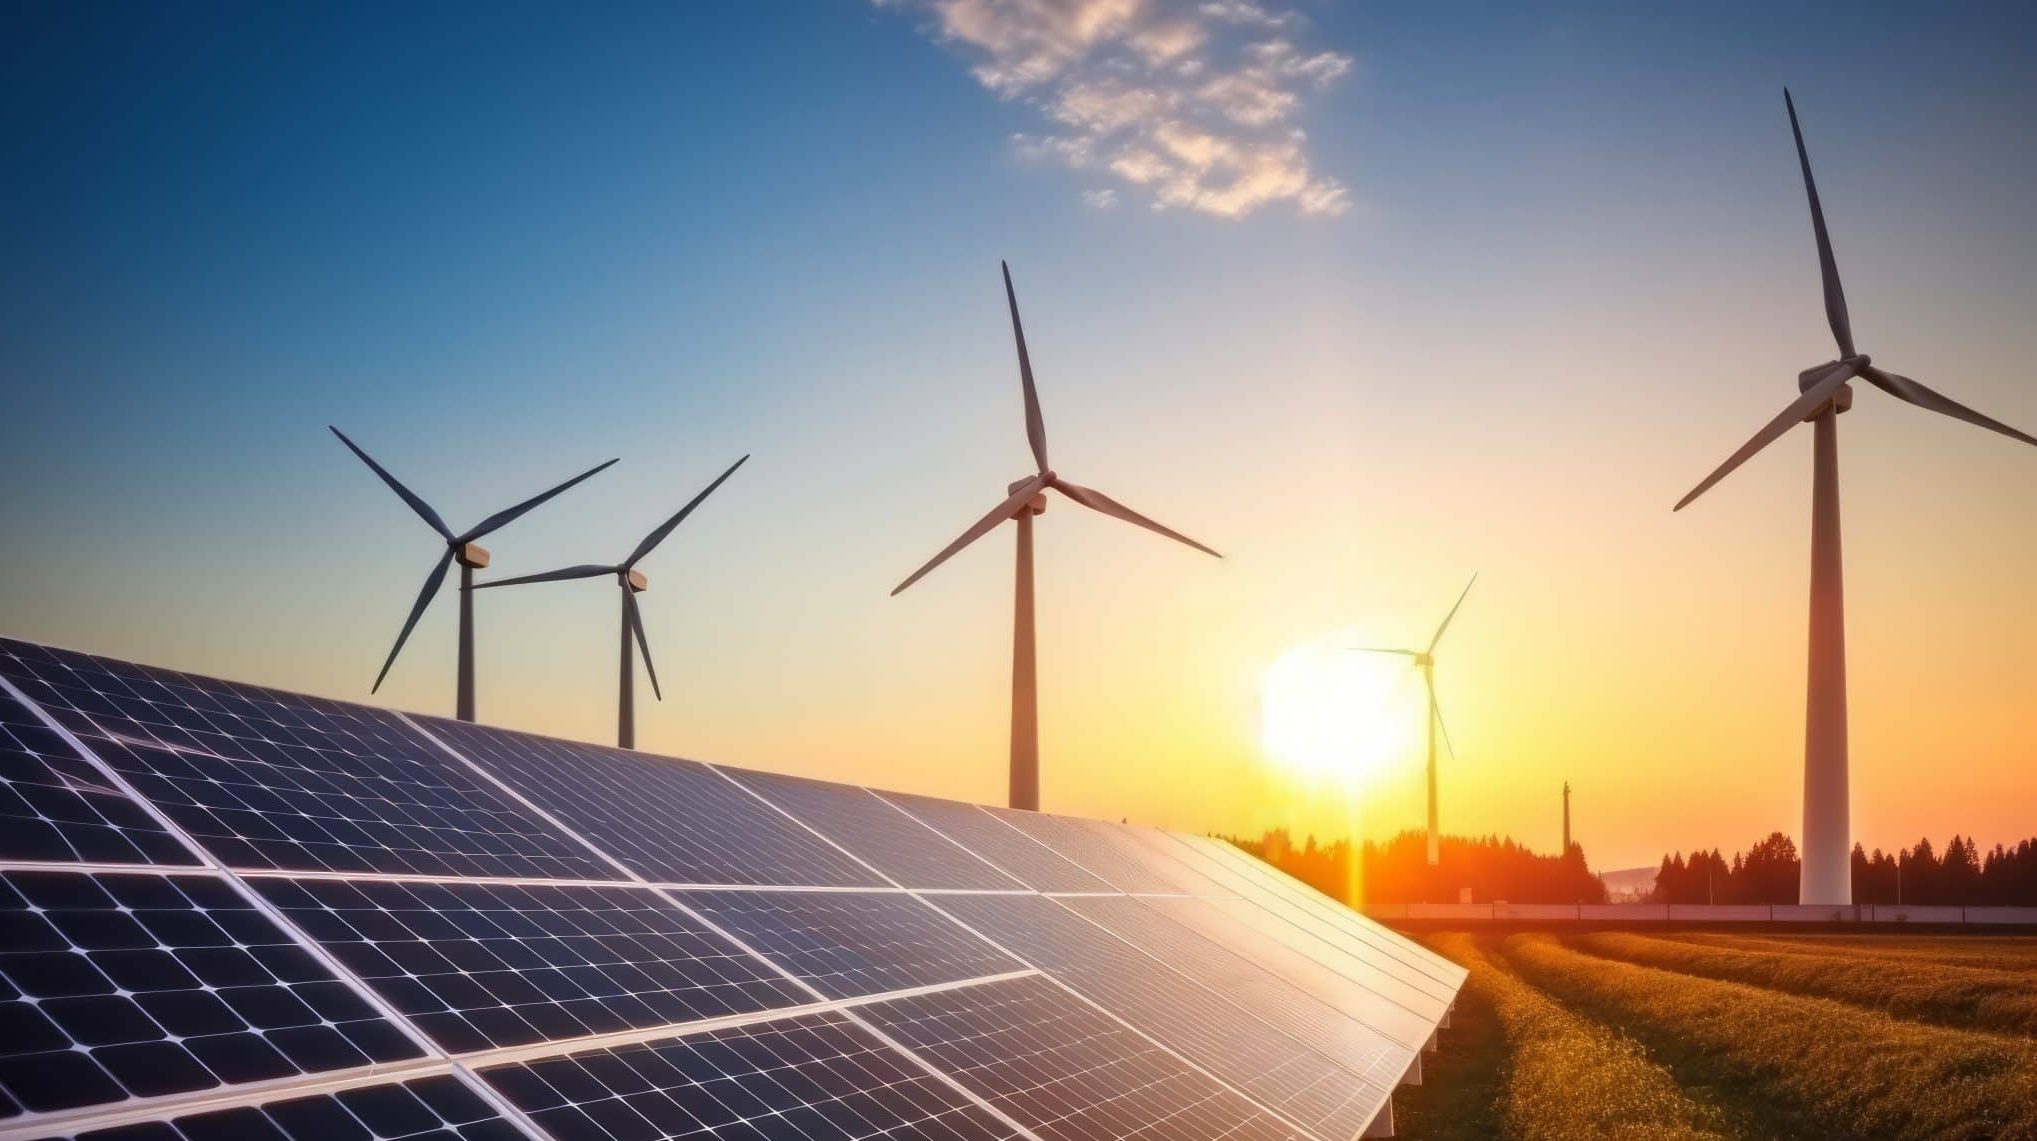 Avez-vous pensé à opter pour un fournisseur d’énergie renouvelable ?